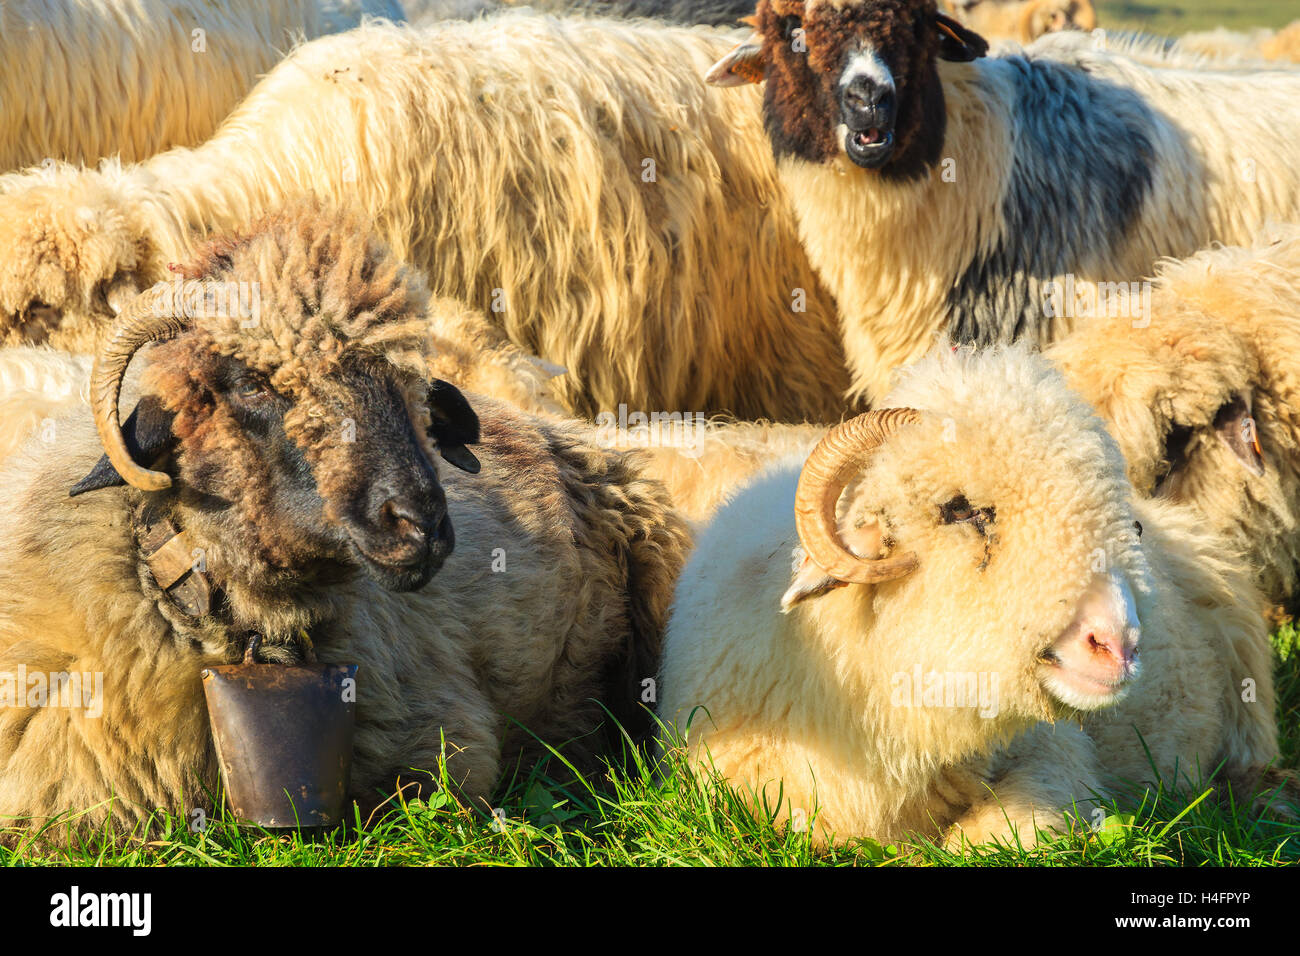 Three mountain sheep facing camera on sunny day, Pieniny Mountains, Poland Stock Photo